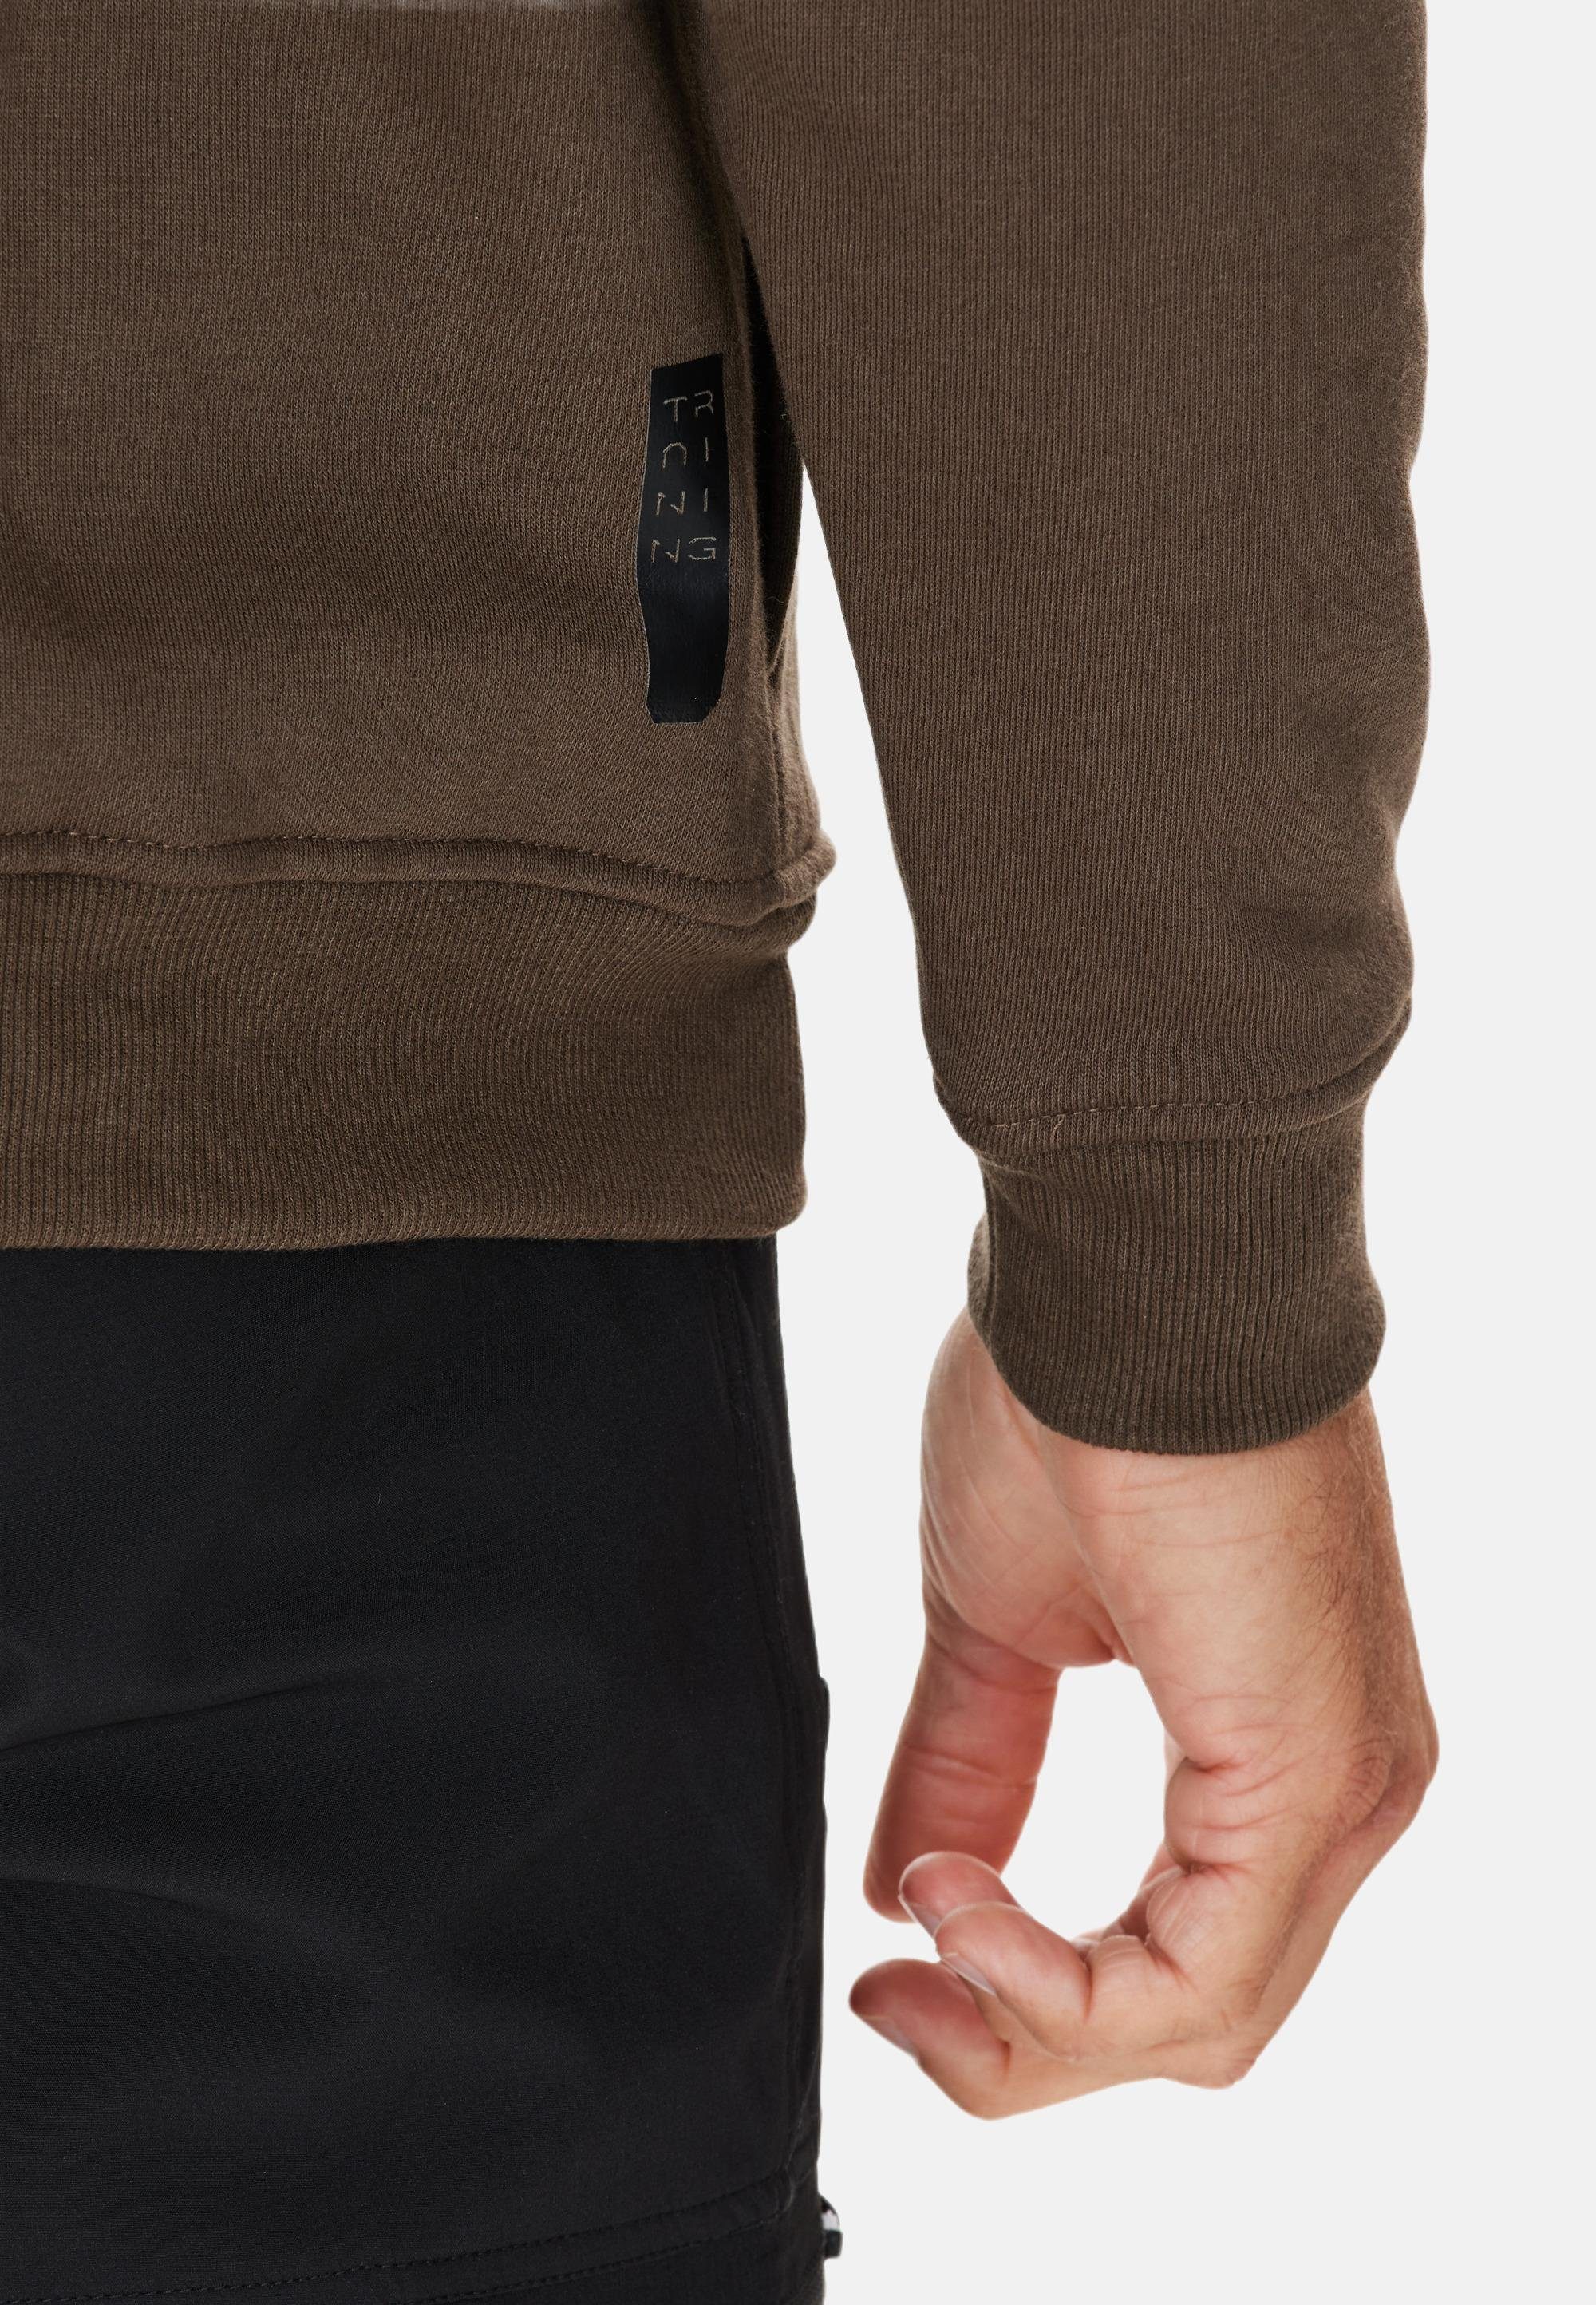 LIONK Kapuzensweatshirt khaki trockender ENDURANCE Qualität schnell in